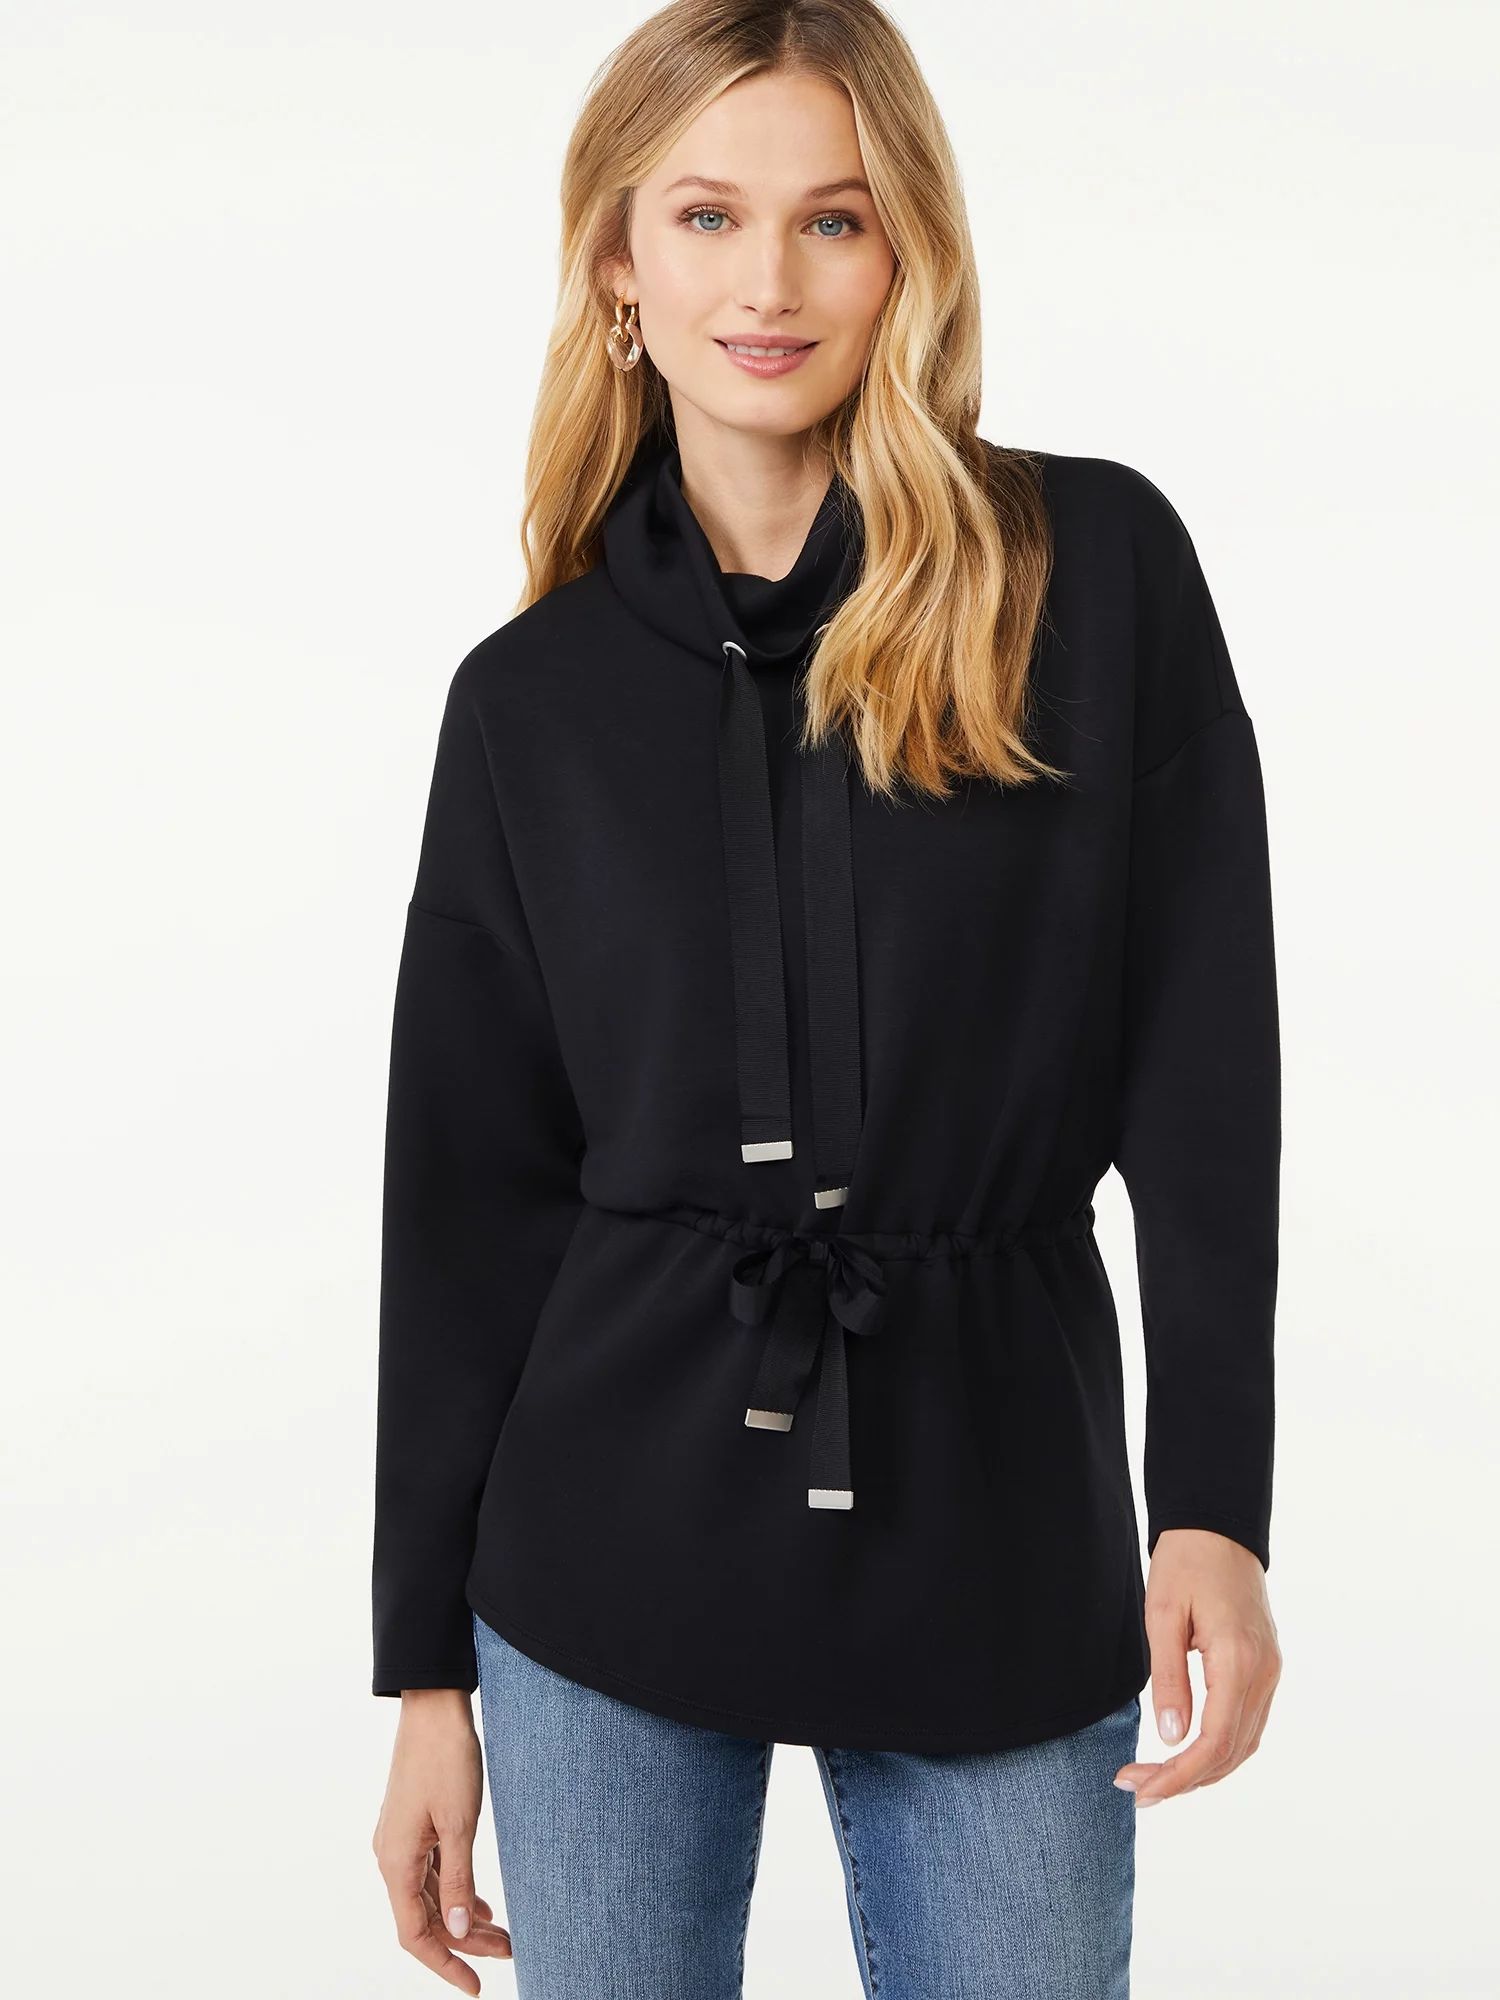 Scoop Women's Cinched Waist Pullover Top | Walmart (US)